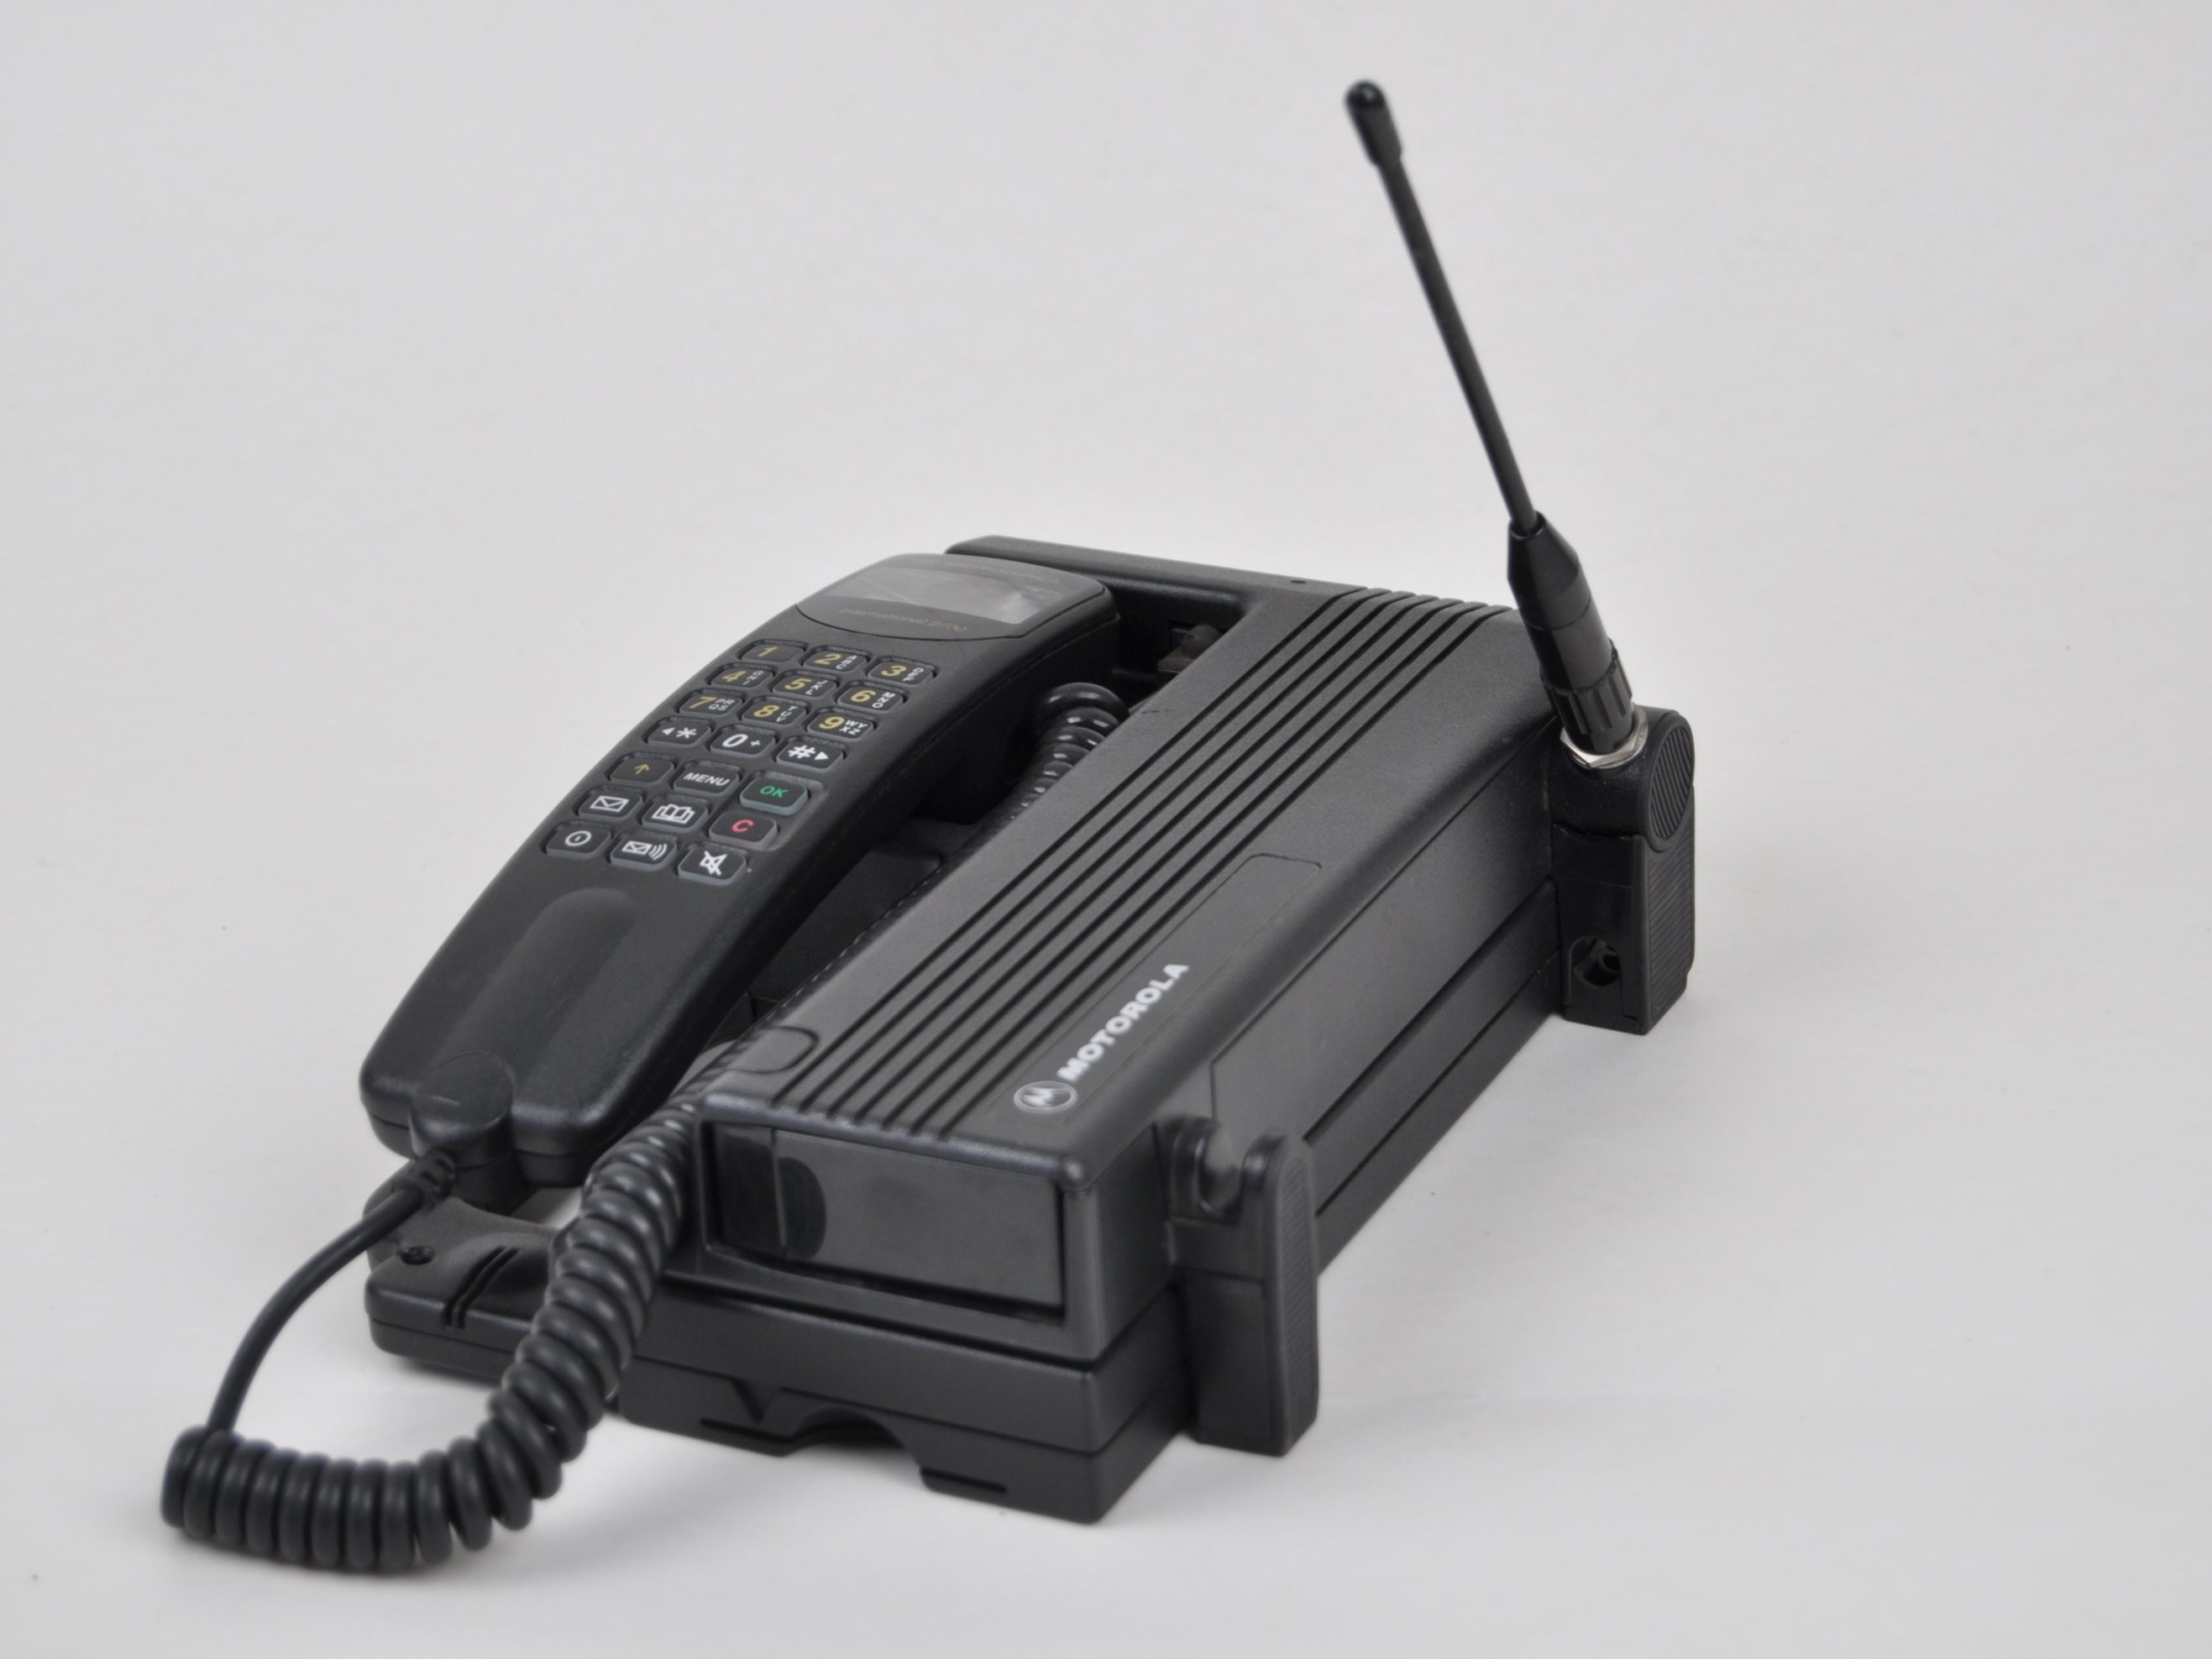 Autotelefon Motorola International 2700 (Volkskunde- und Freilichtmuseum Roscheider Hof CC0)